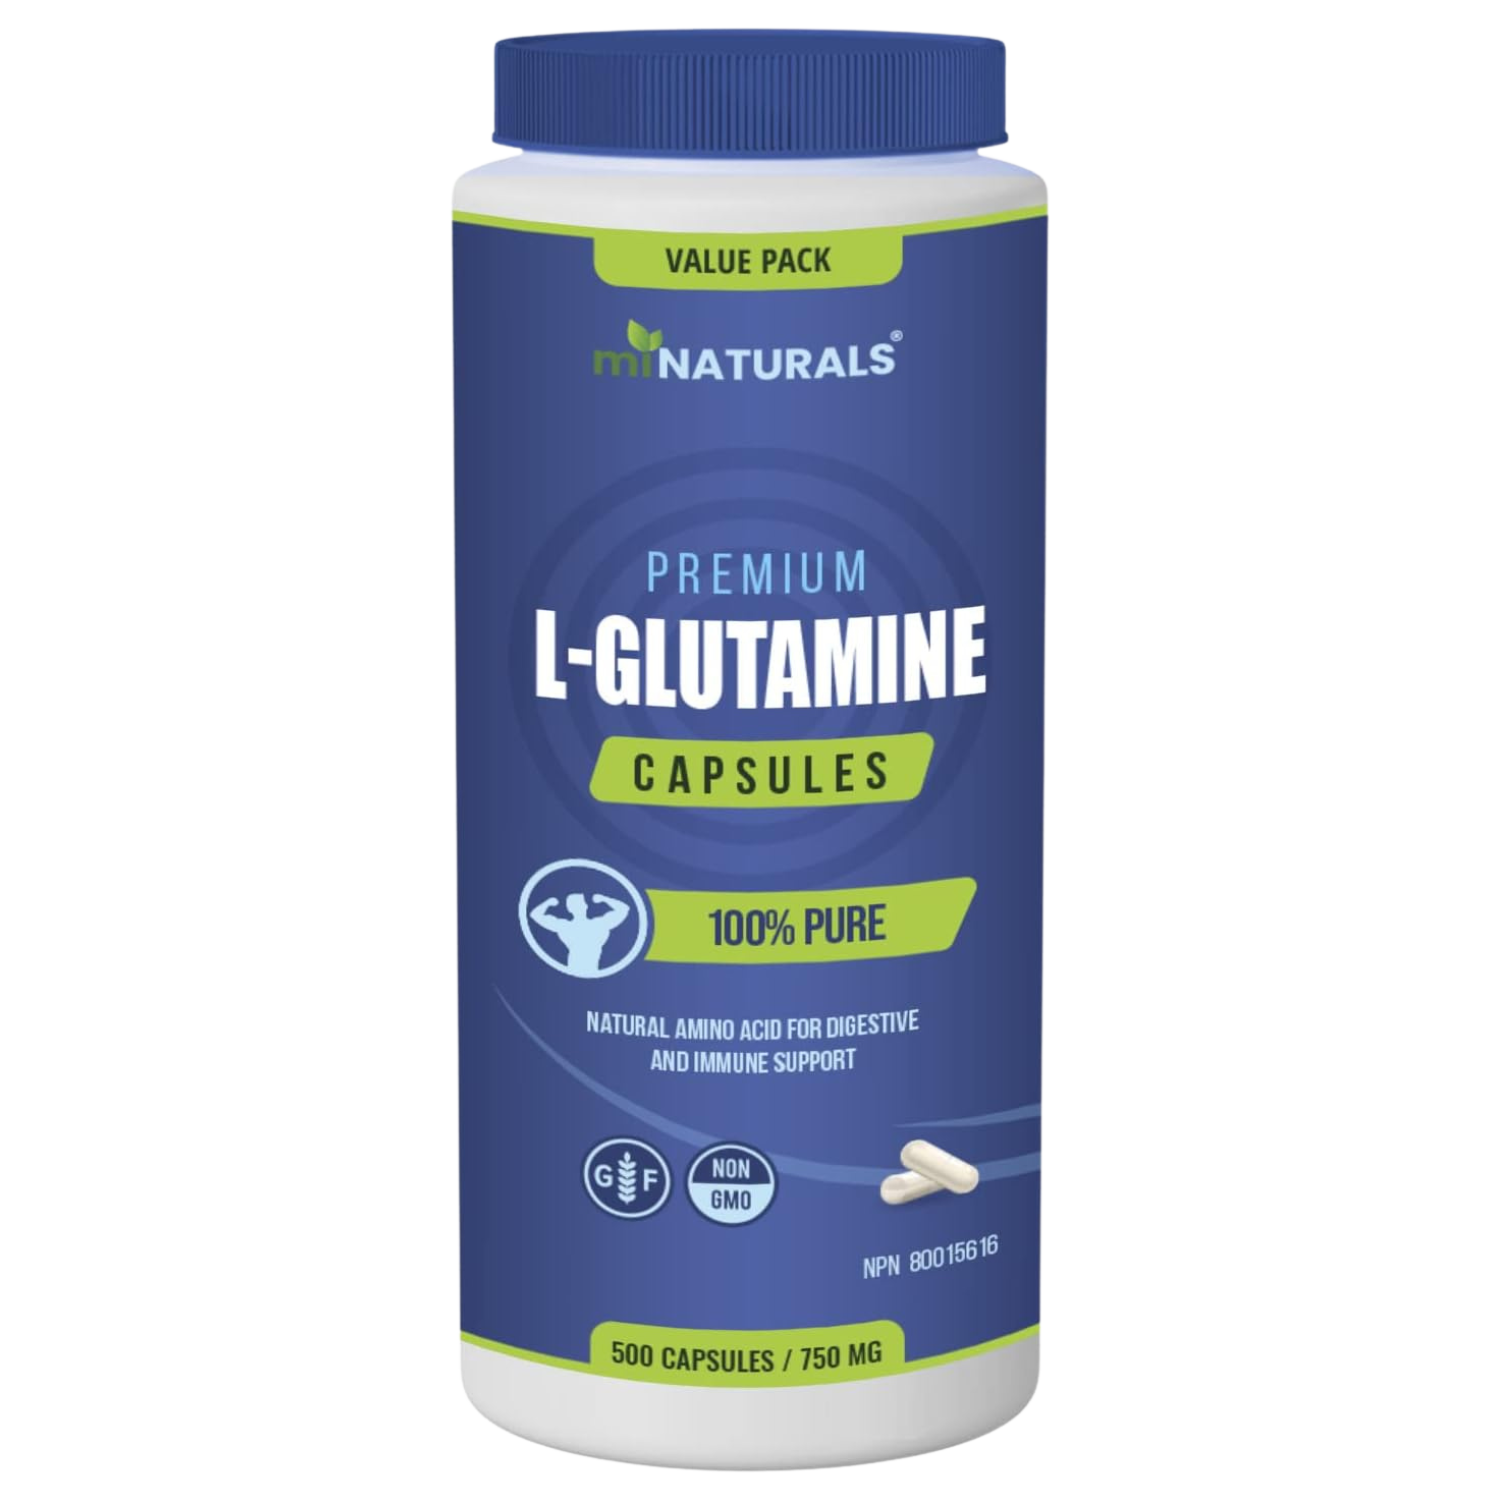 L-Glutamine Capsules - 500 Capsules - VALUE PACK